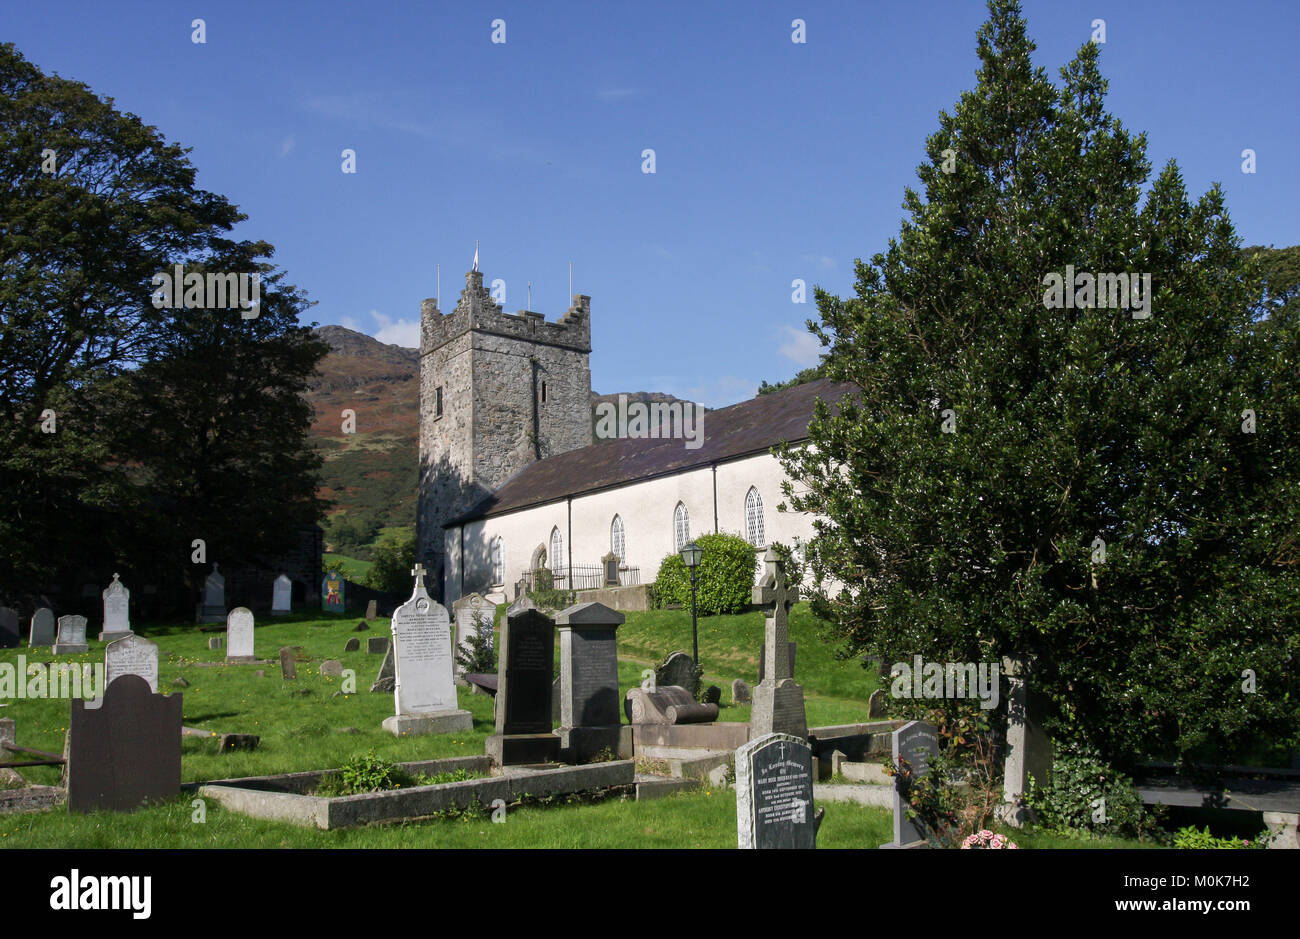 La Sainte Trinité Heritage Centre à Carlingford, comté de Louth Irlande. Une église médiévale restaurée abrite le centre du patrimoine mondial de l'Irlande. Banque D'Images